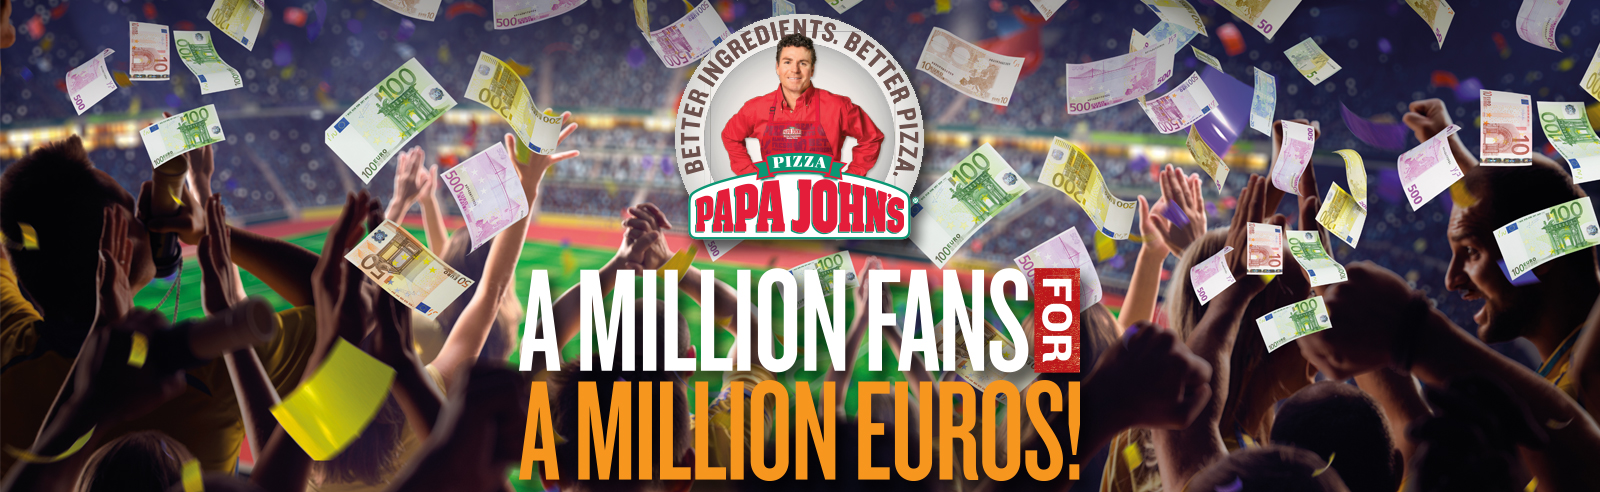 A Million Fans For A Million Euros!